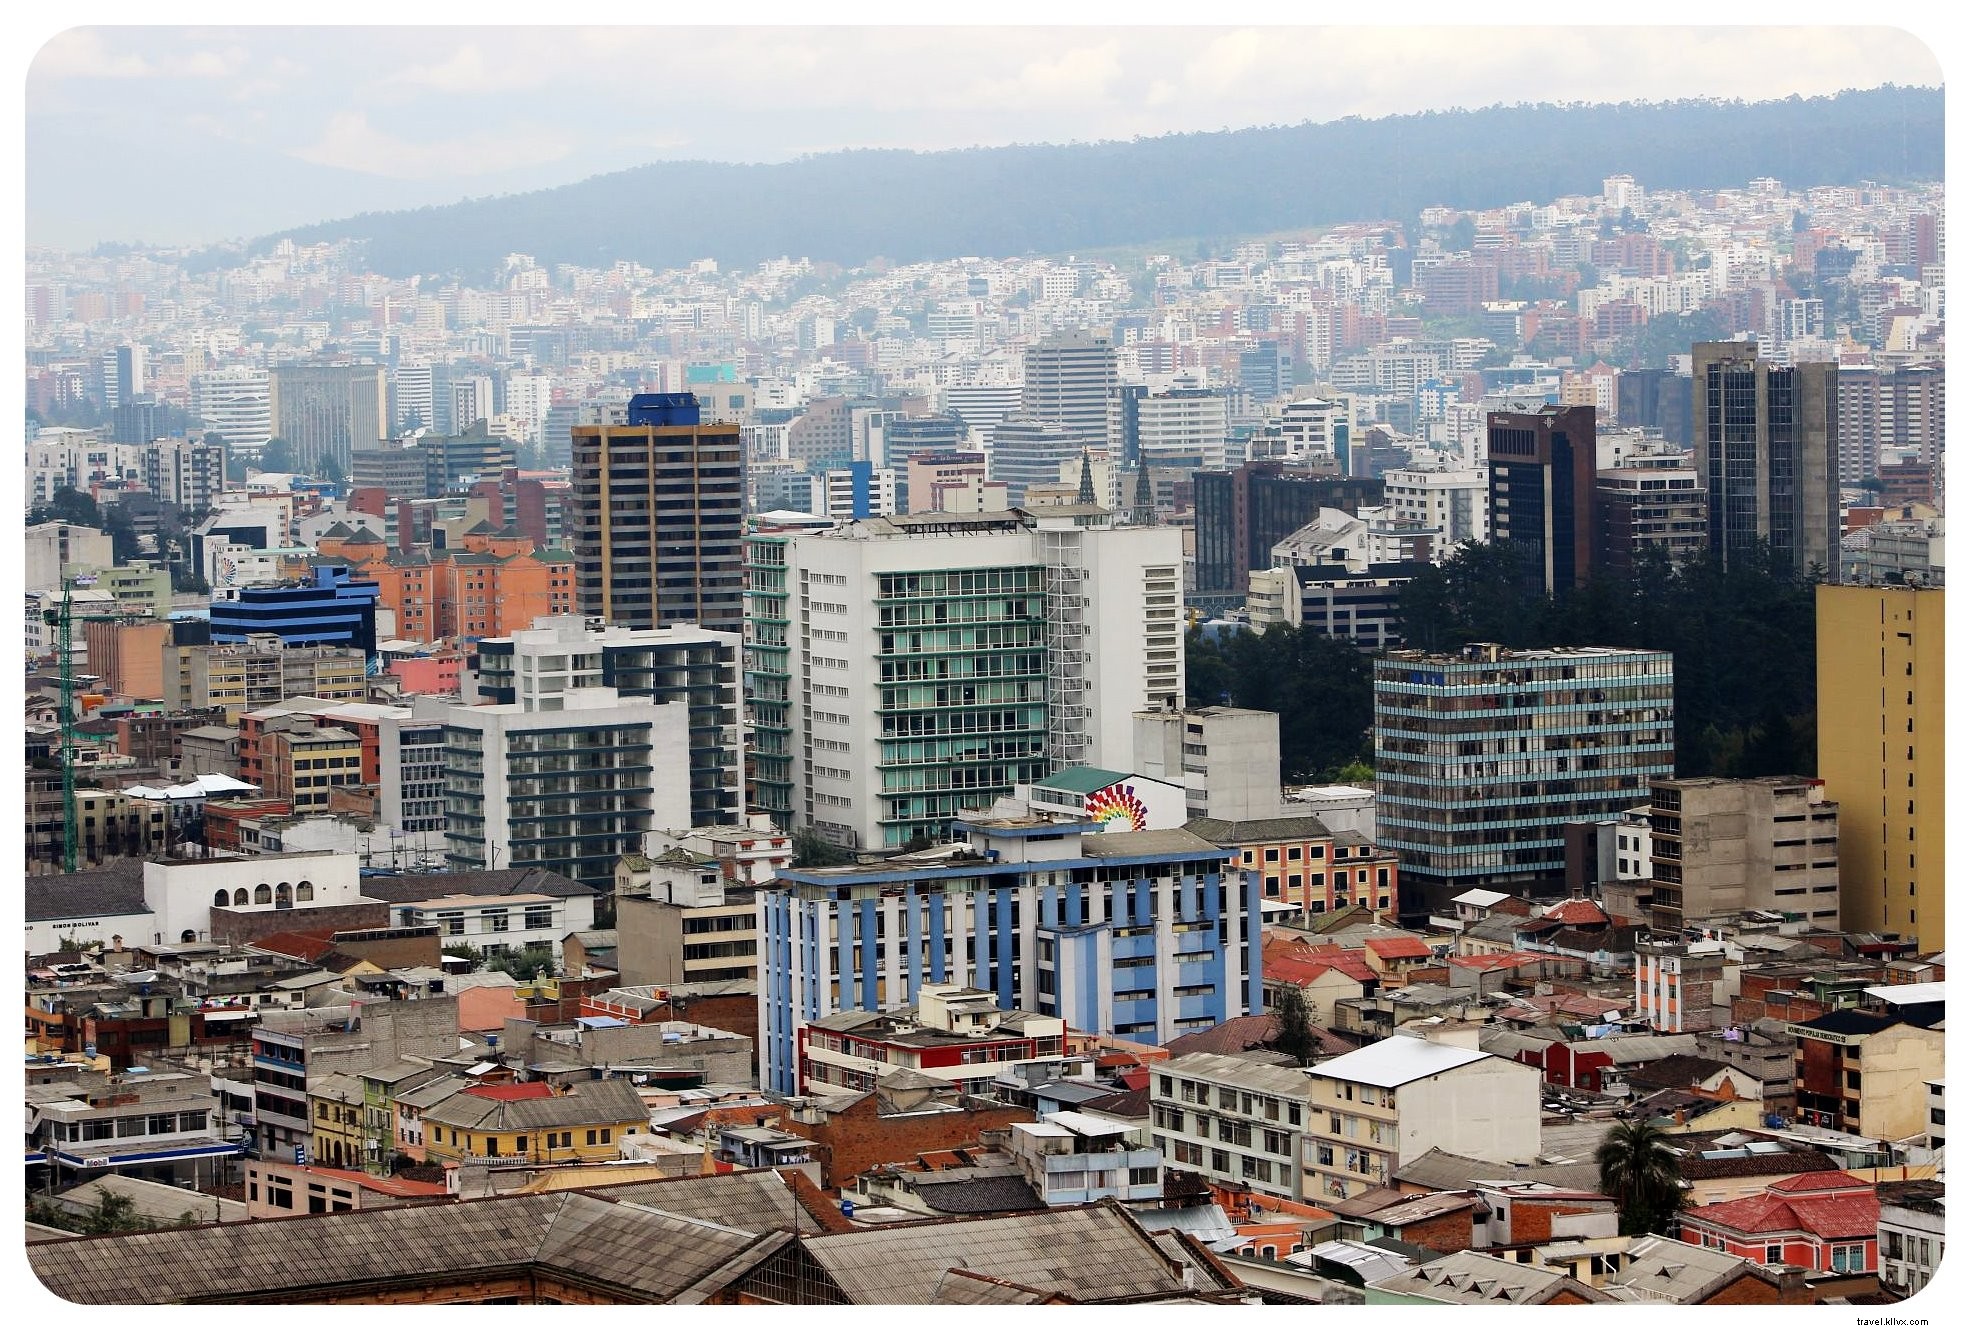 Quito - Una fría bienvenida a Ecuador